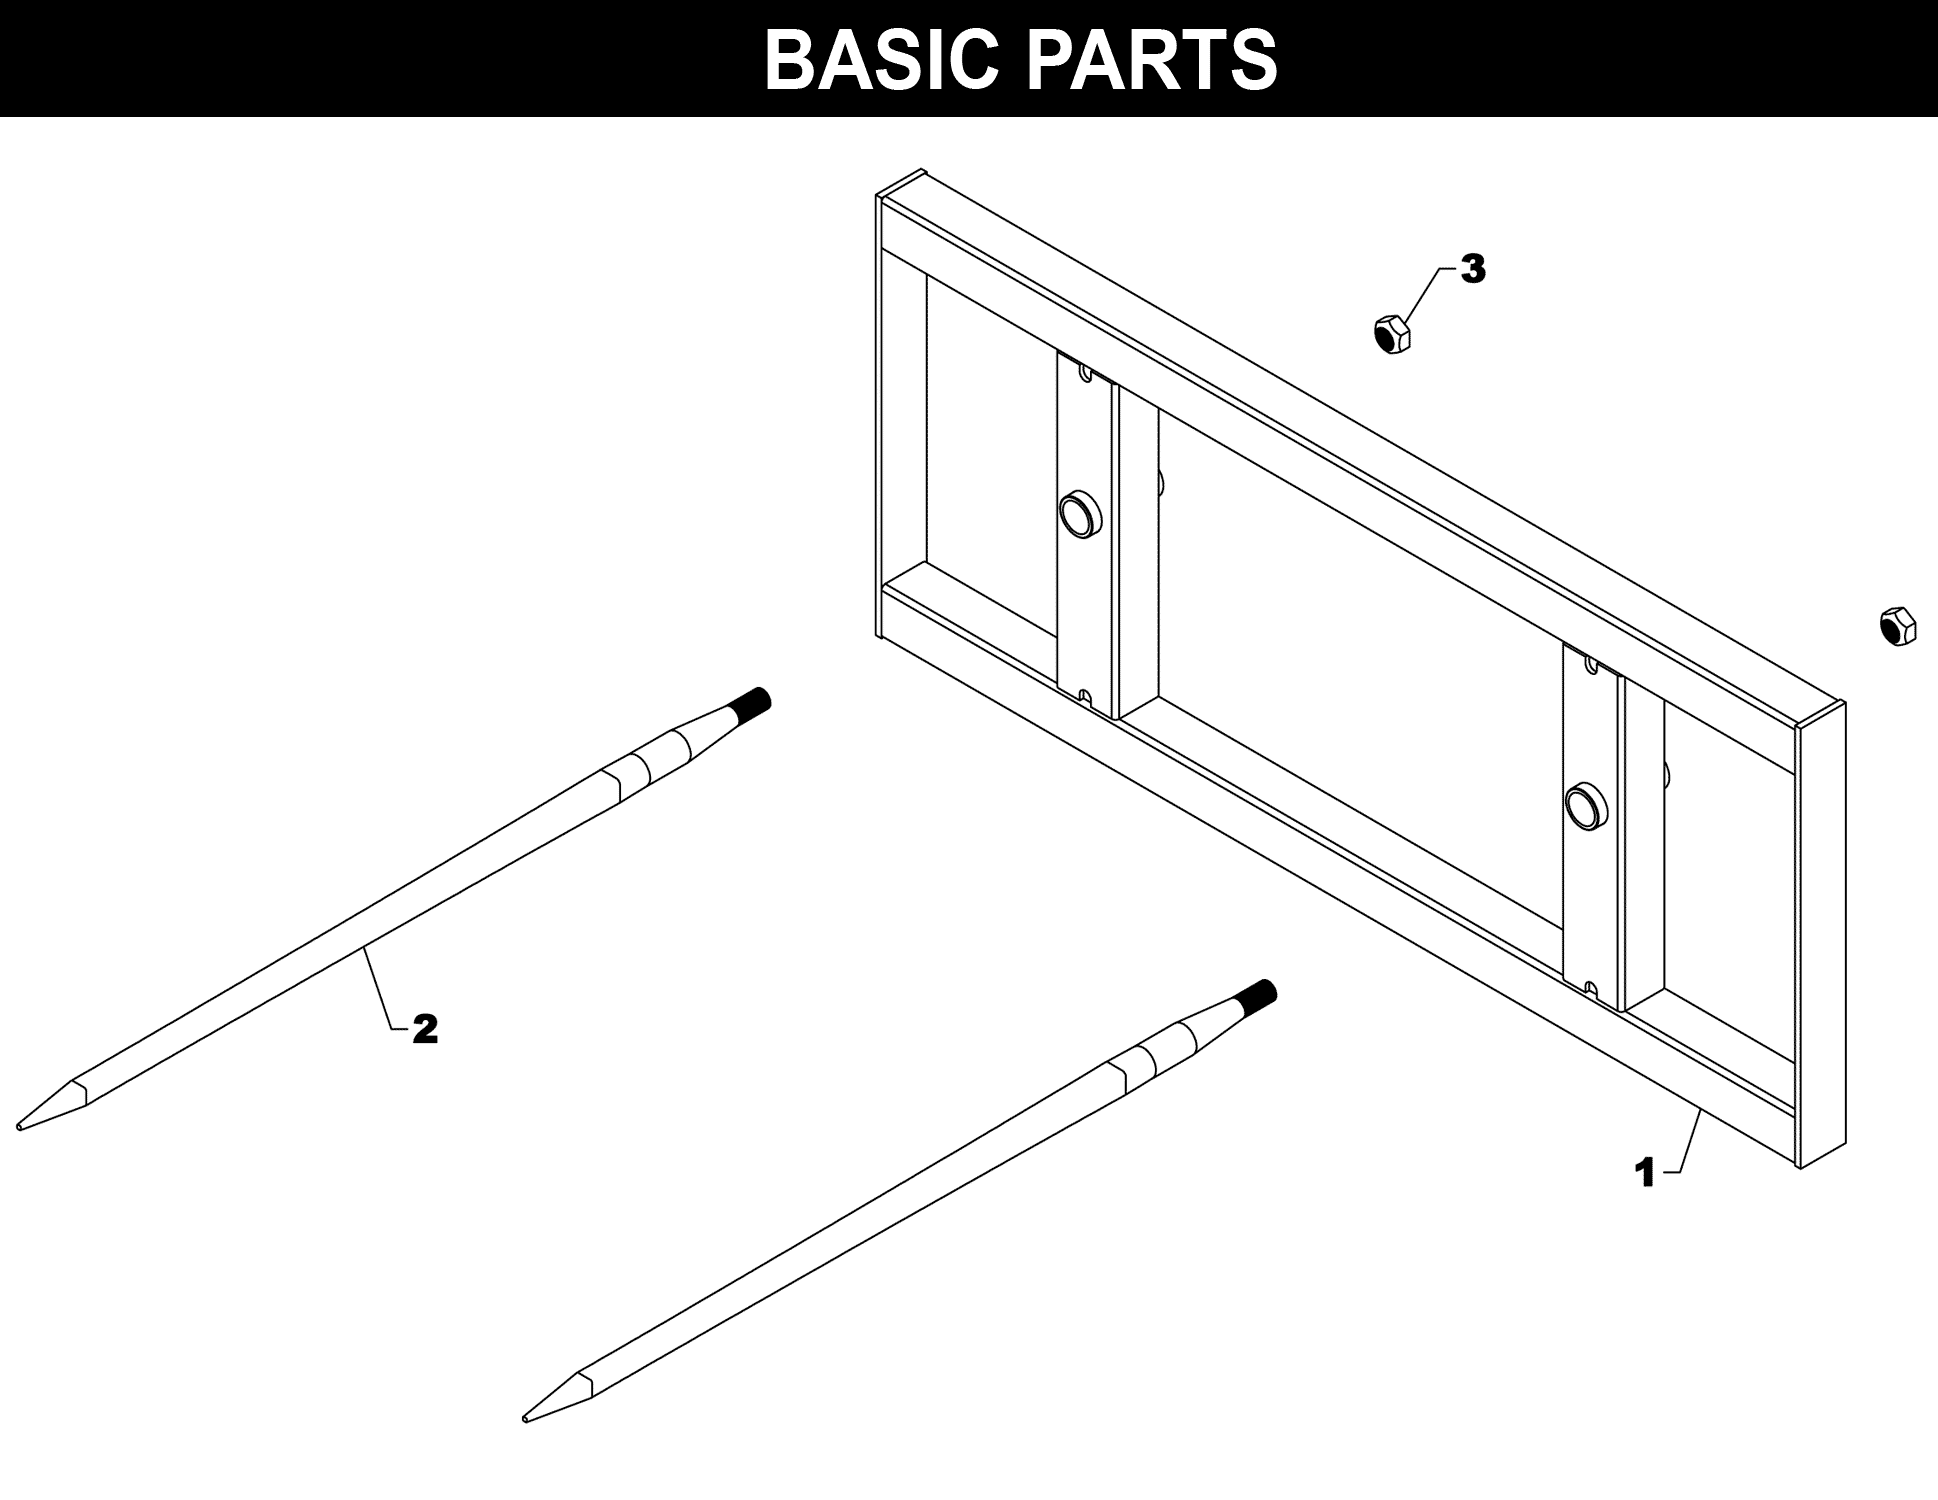 SP-72 Basic Parts